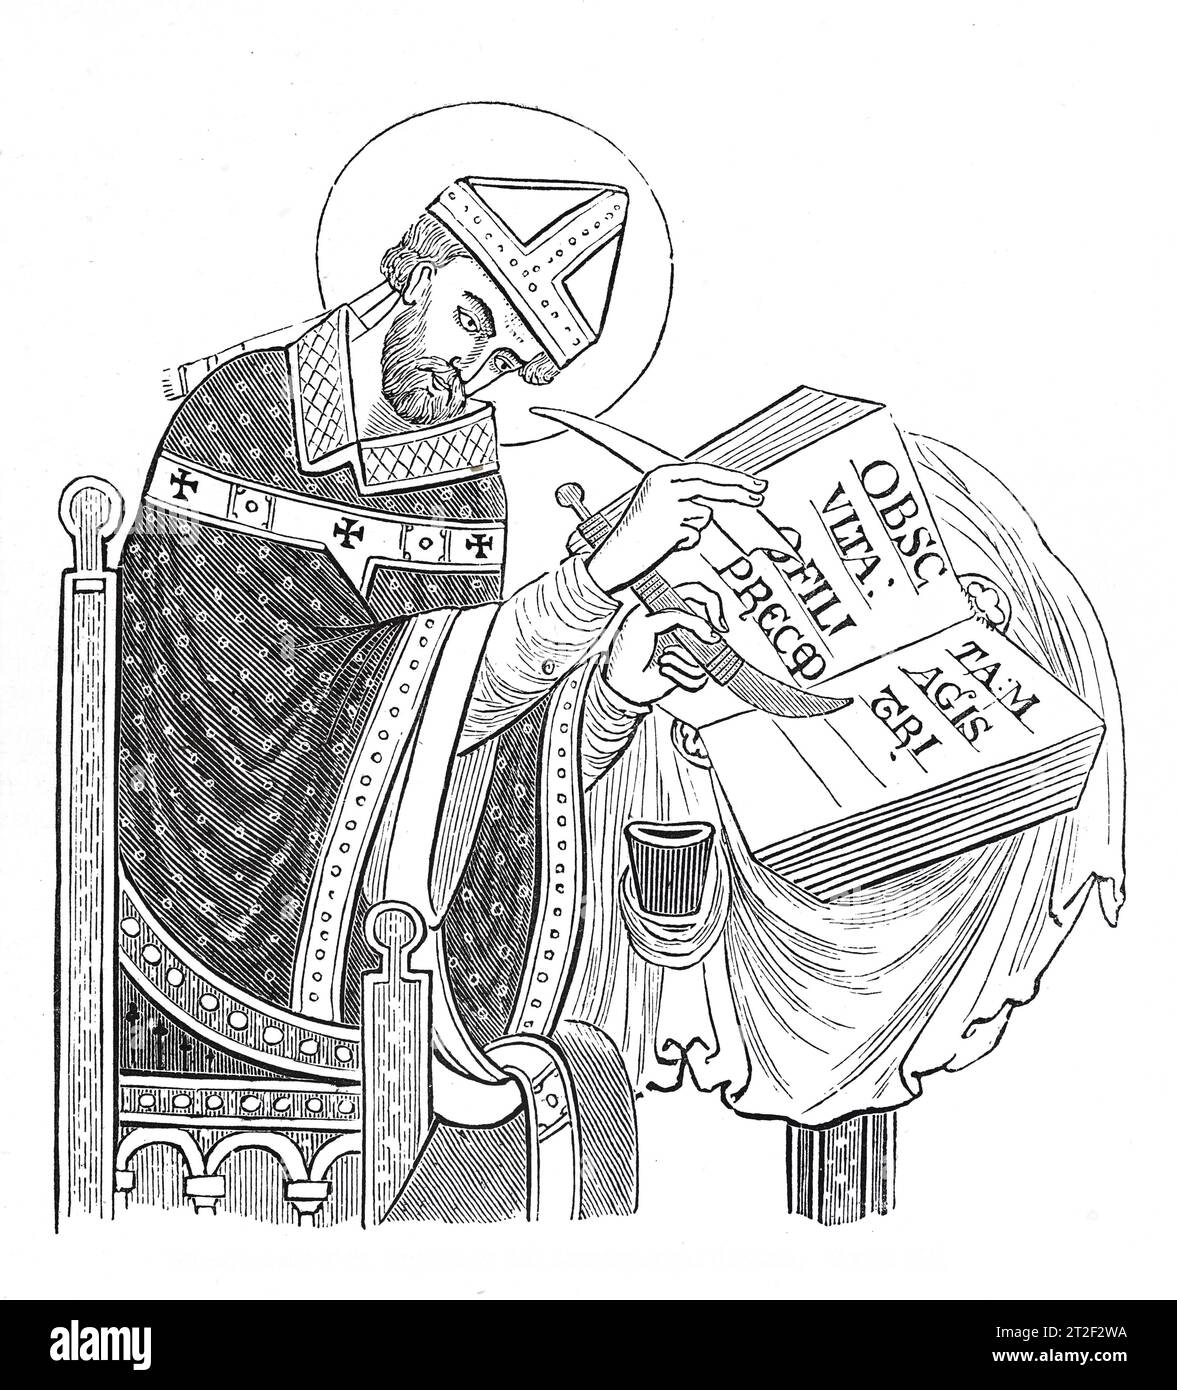 St Dunstan, Arzobispo del siglo X de Canterbury Ilustración en blanco y negro de la 'Vieja Inglaterra' publicada por James Sangster en 1860. Foto de stock